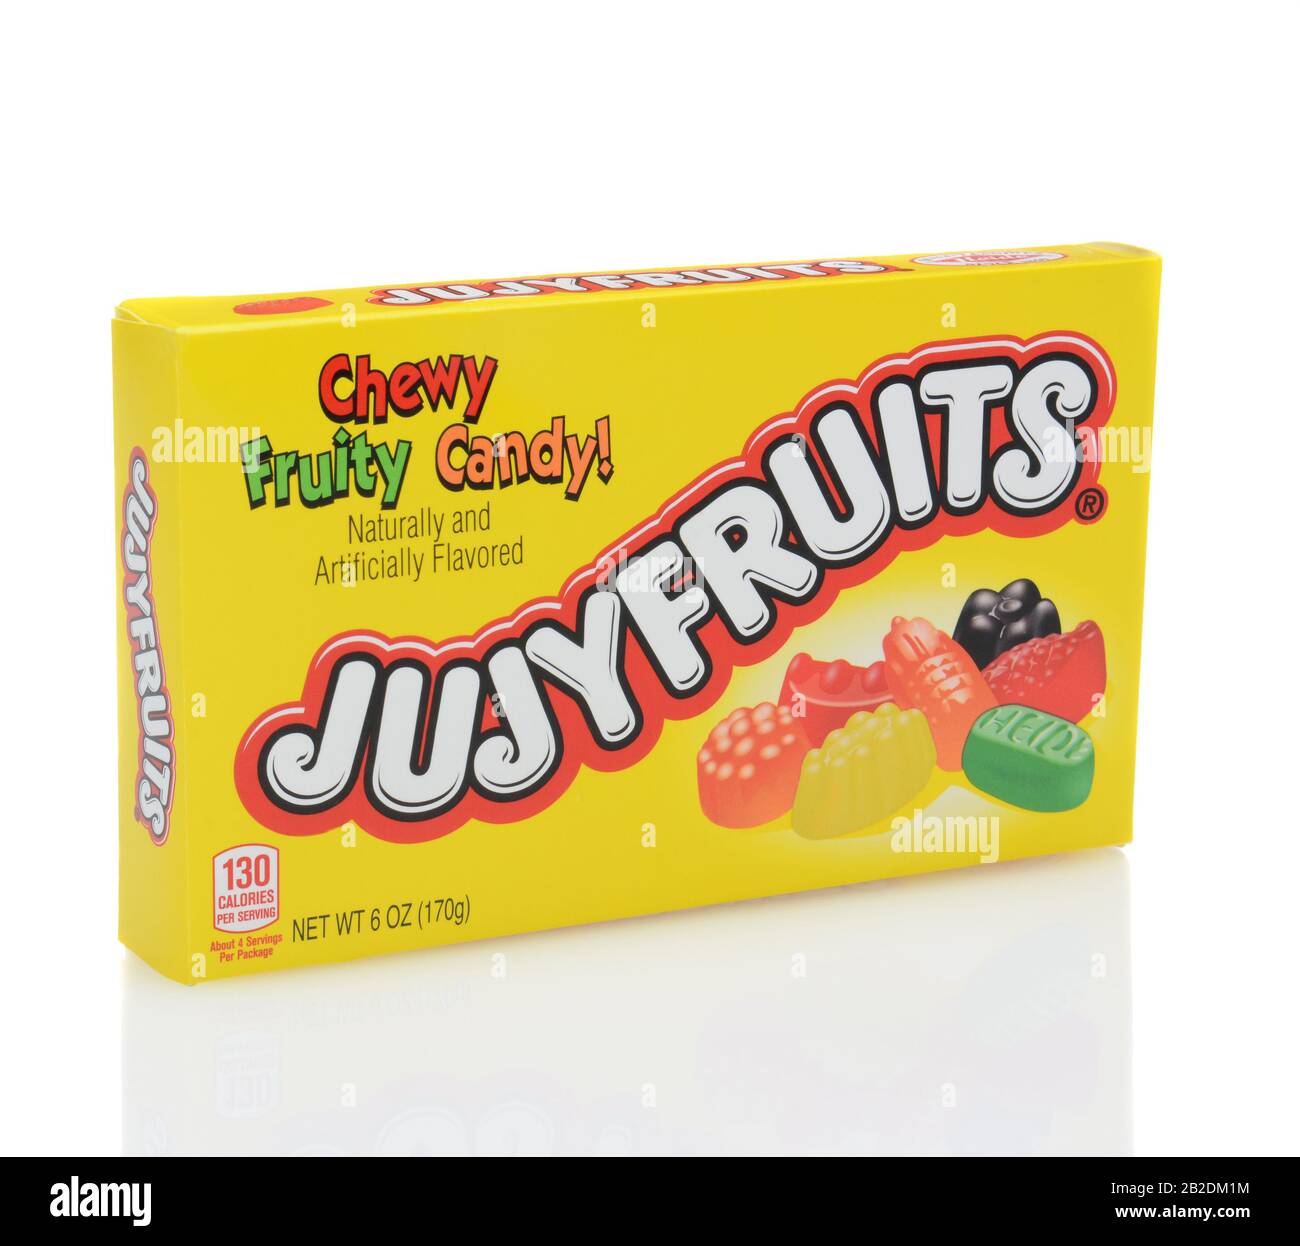 Irvine, KALIFORNIEN - 12. DEZEMBER 2014: Eine Schachtel Jujyfruits Candy. Jujyfruits begann 1920 mit der Produktion. Die keuligen fruchtigen Süßigkeiten sind ein beliebter Snack i Stockfoto